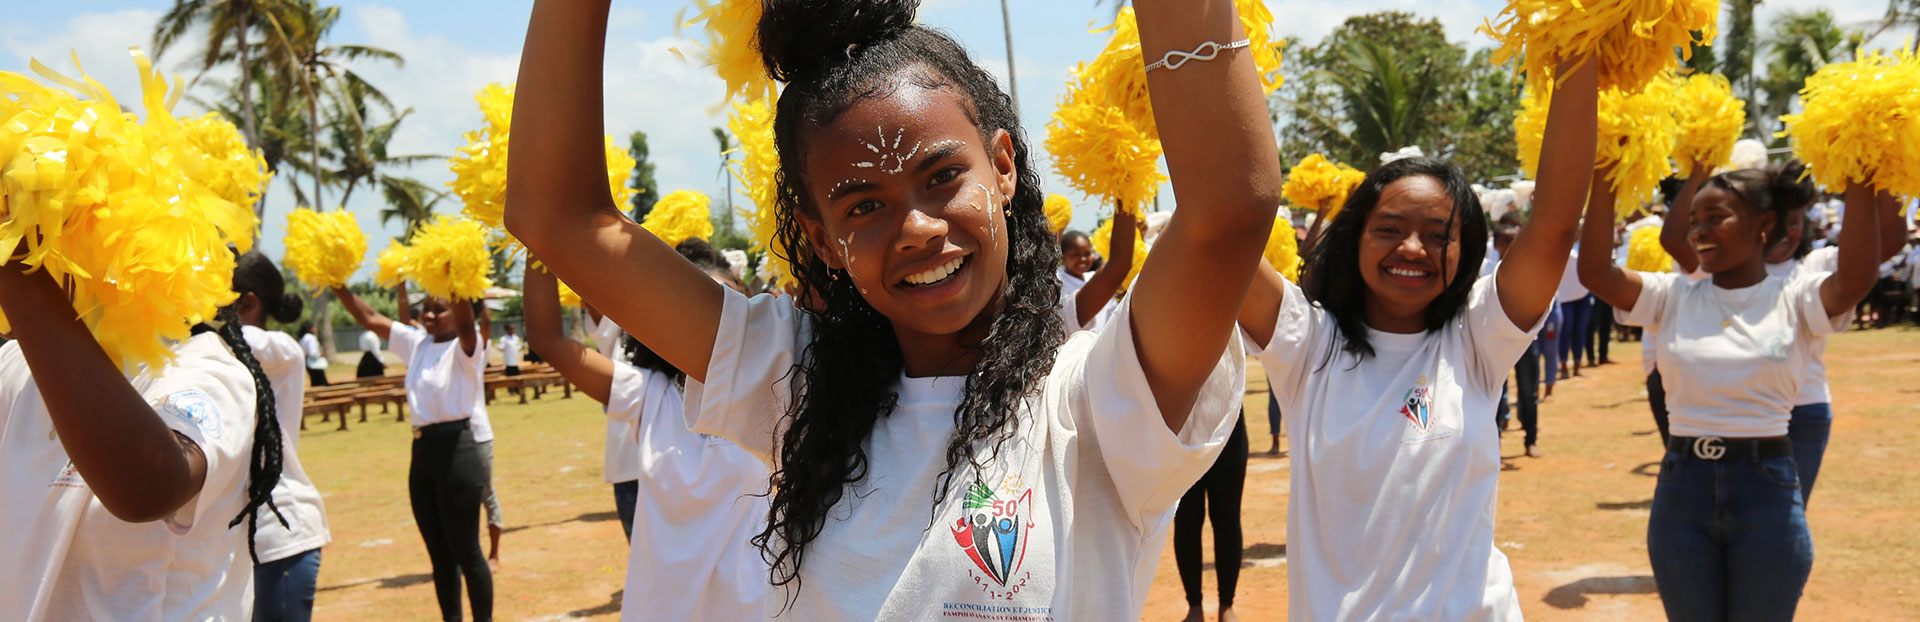 Madagascar: L’educazione dei gesuiti anche nel sud dell’isola